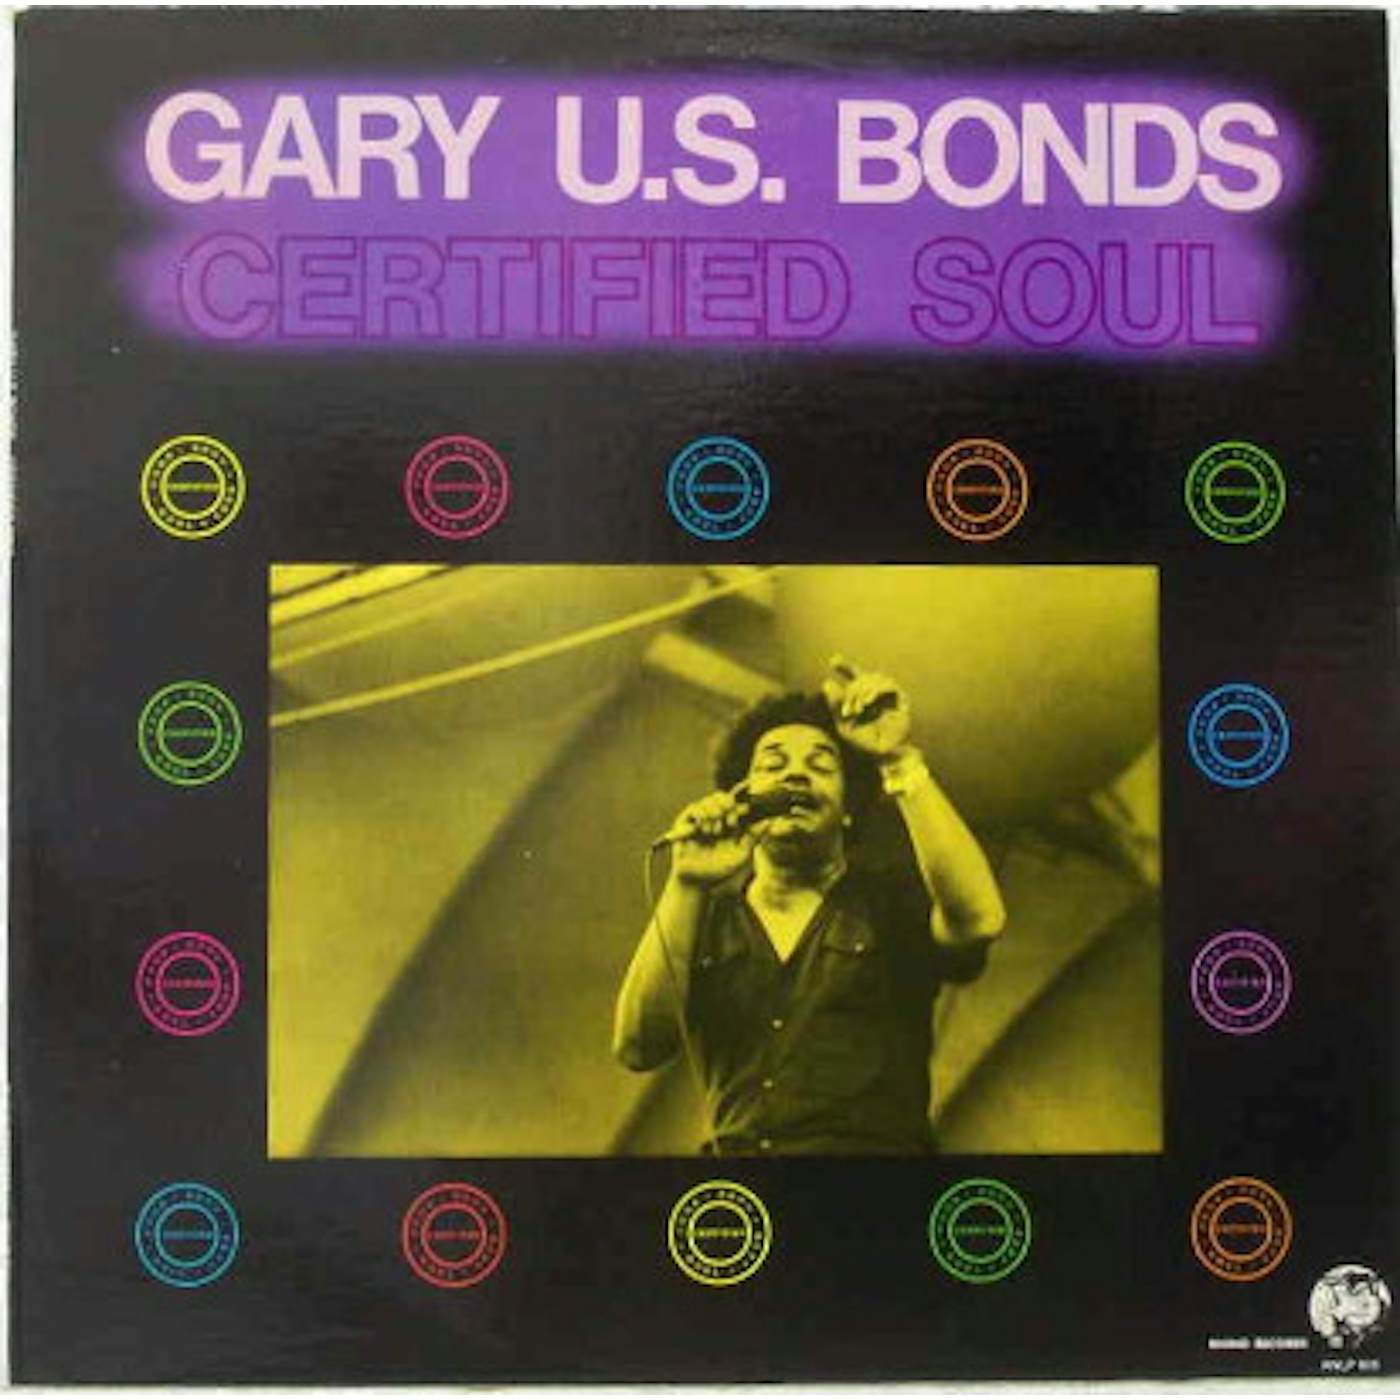 Gary U.S. Bonds CERTIFIED SOUL CD